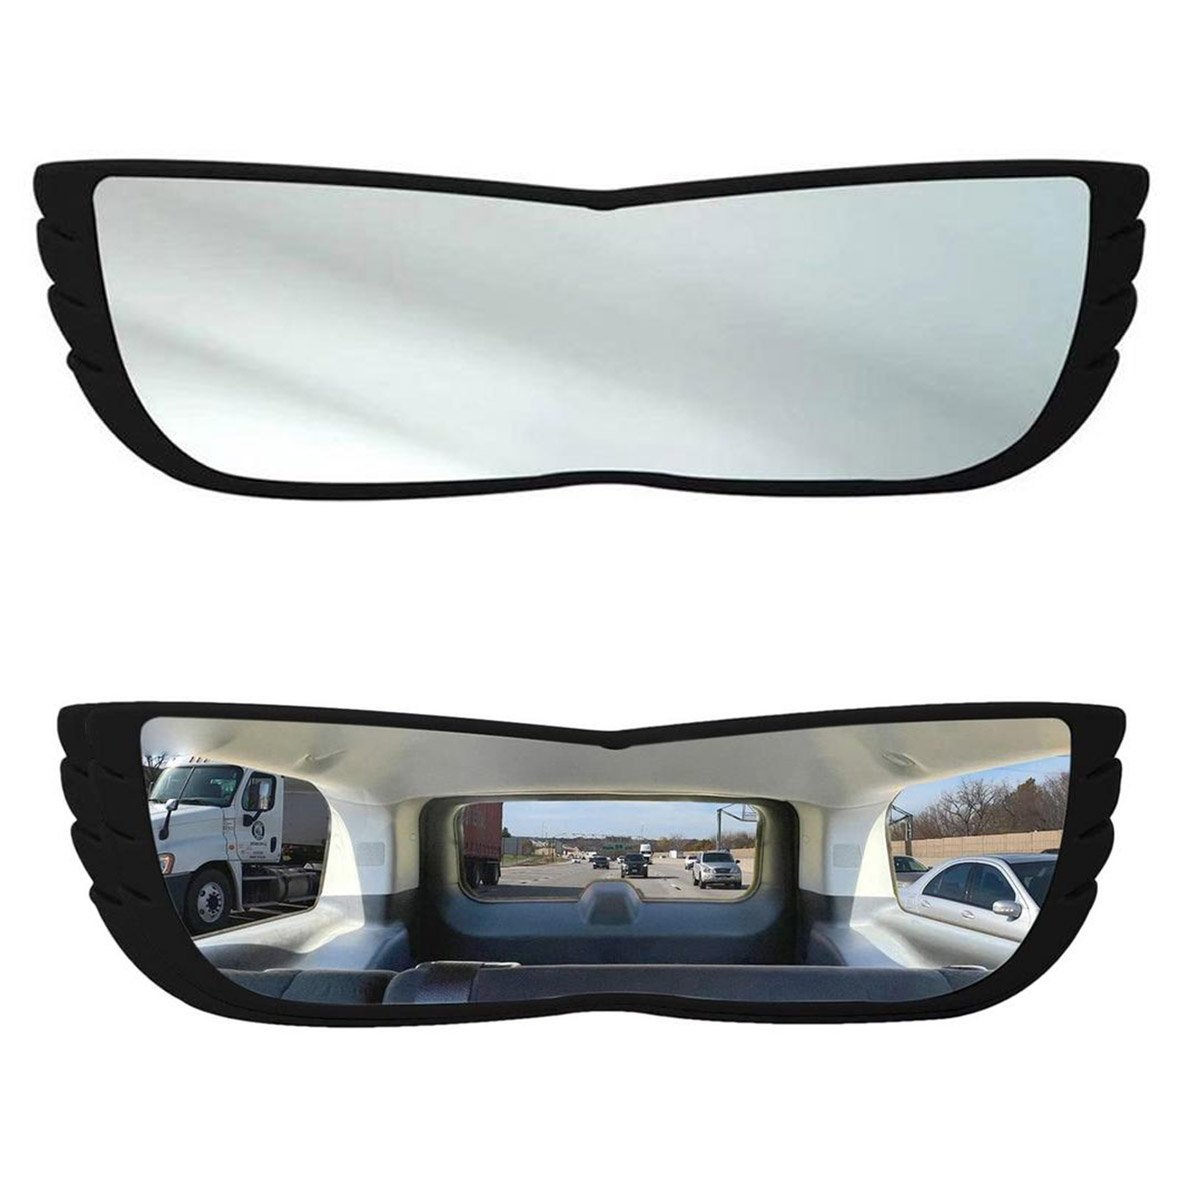 Espelho Retrovisor 160 Graus Carro Automotivo Caminhao Visao Ampla Panoramica Alta Visibilidade Prot